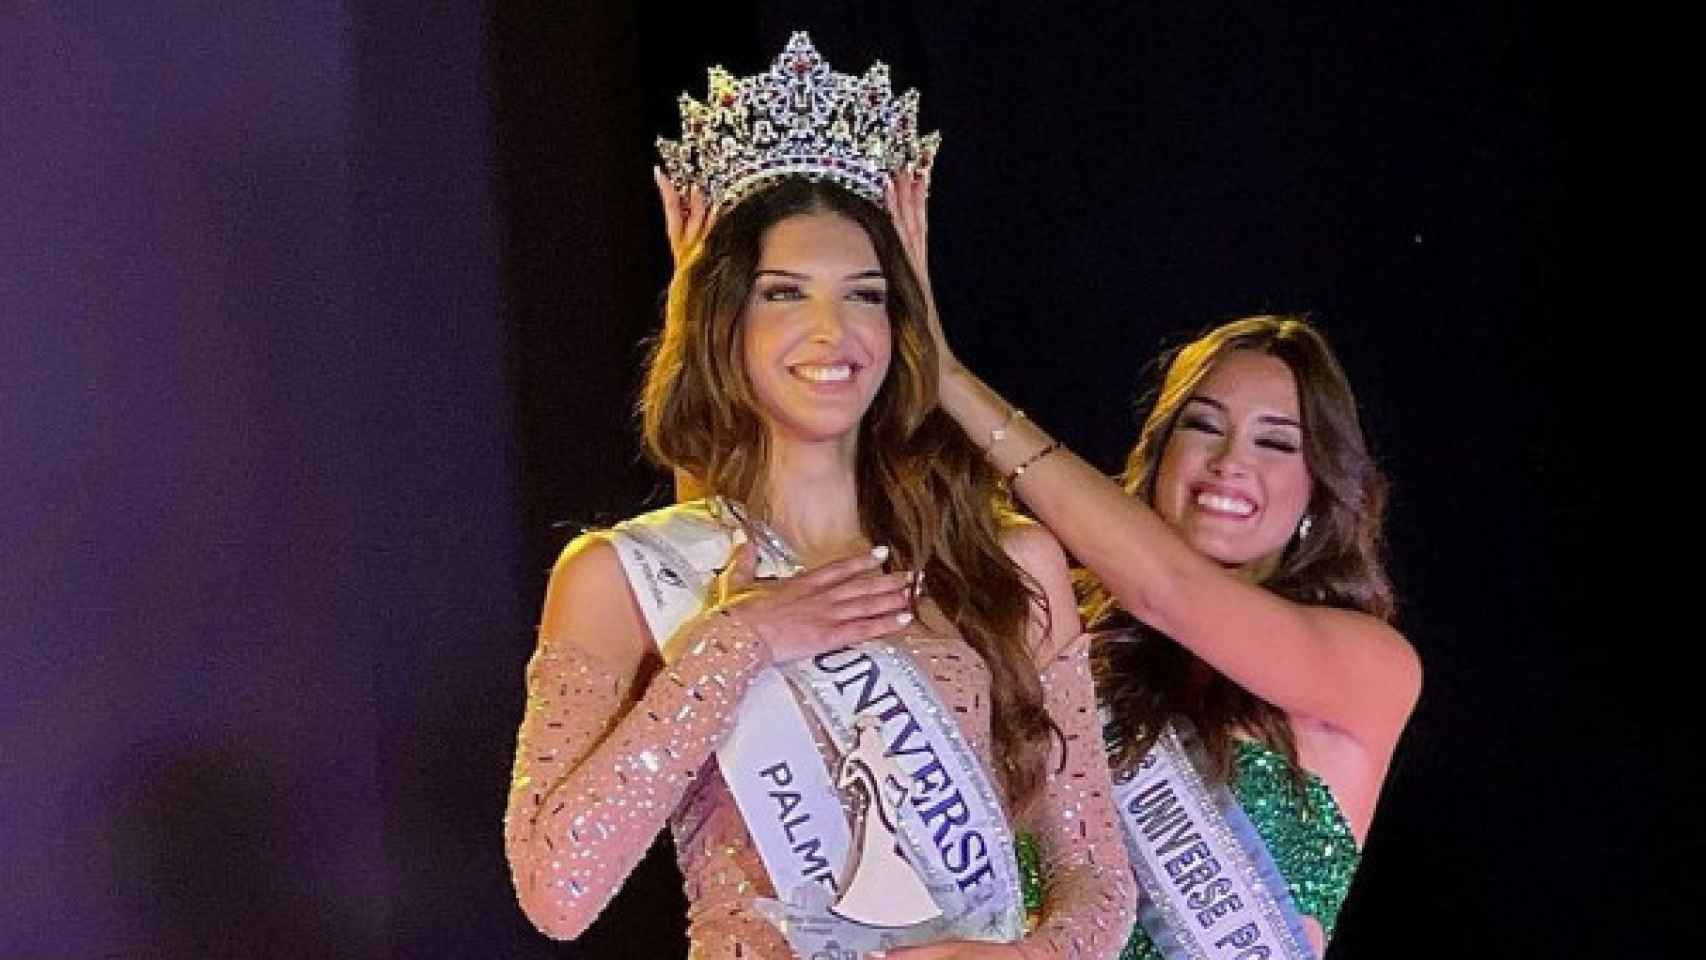 La portuguesa hace historia y participará en Miss Universo, donde se